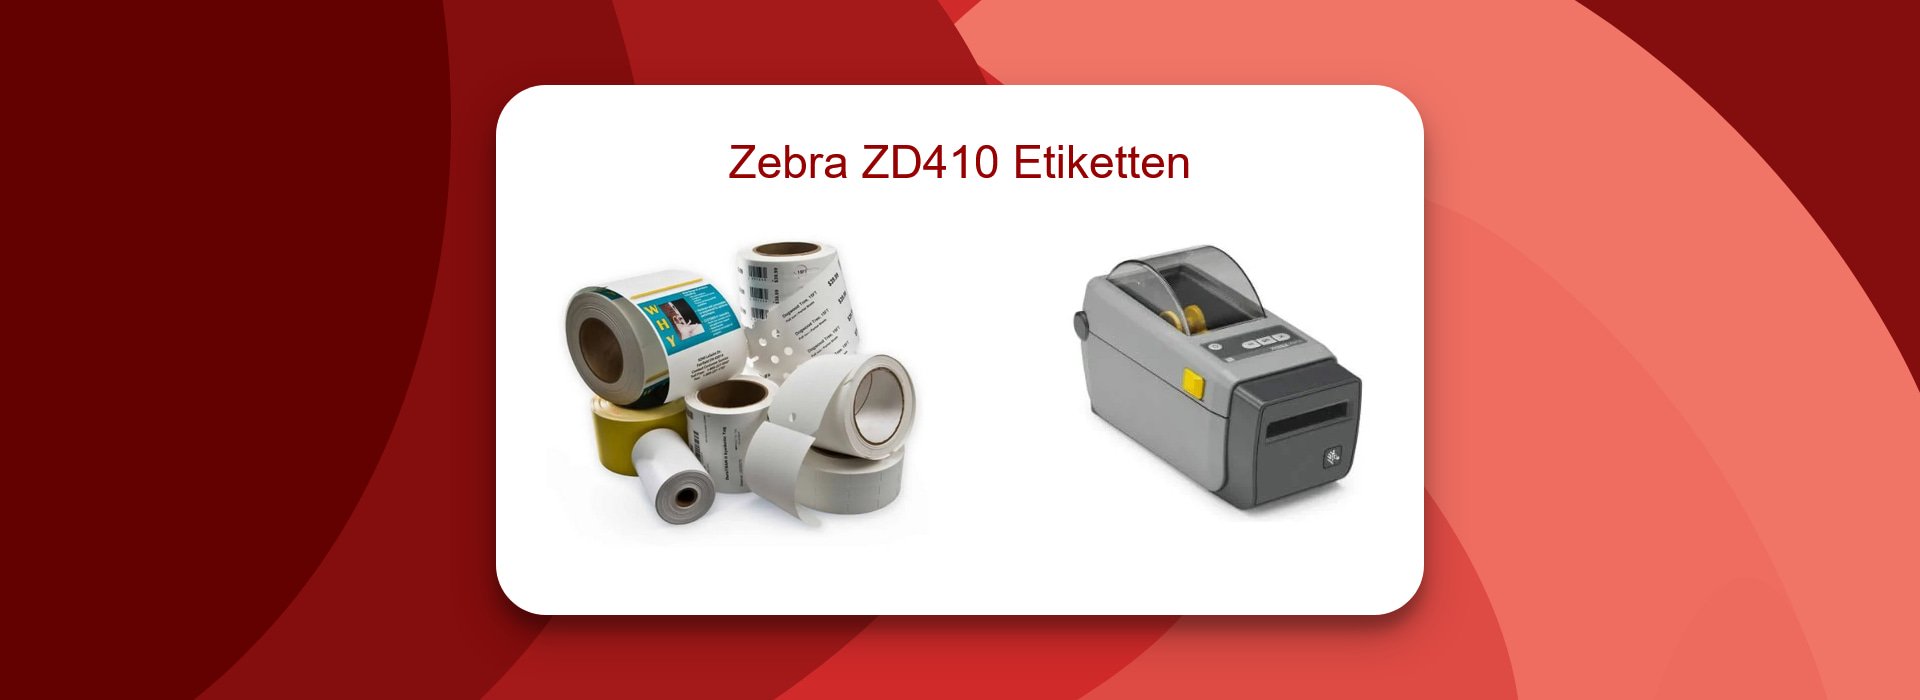 Effizienzsteigerung mit Zebra ZD410 Etiketten